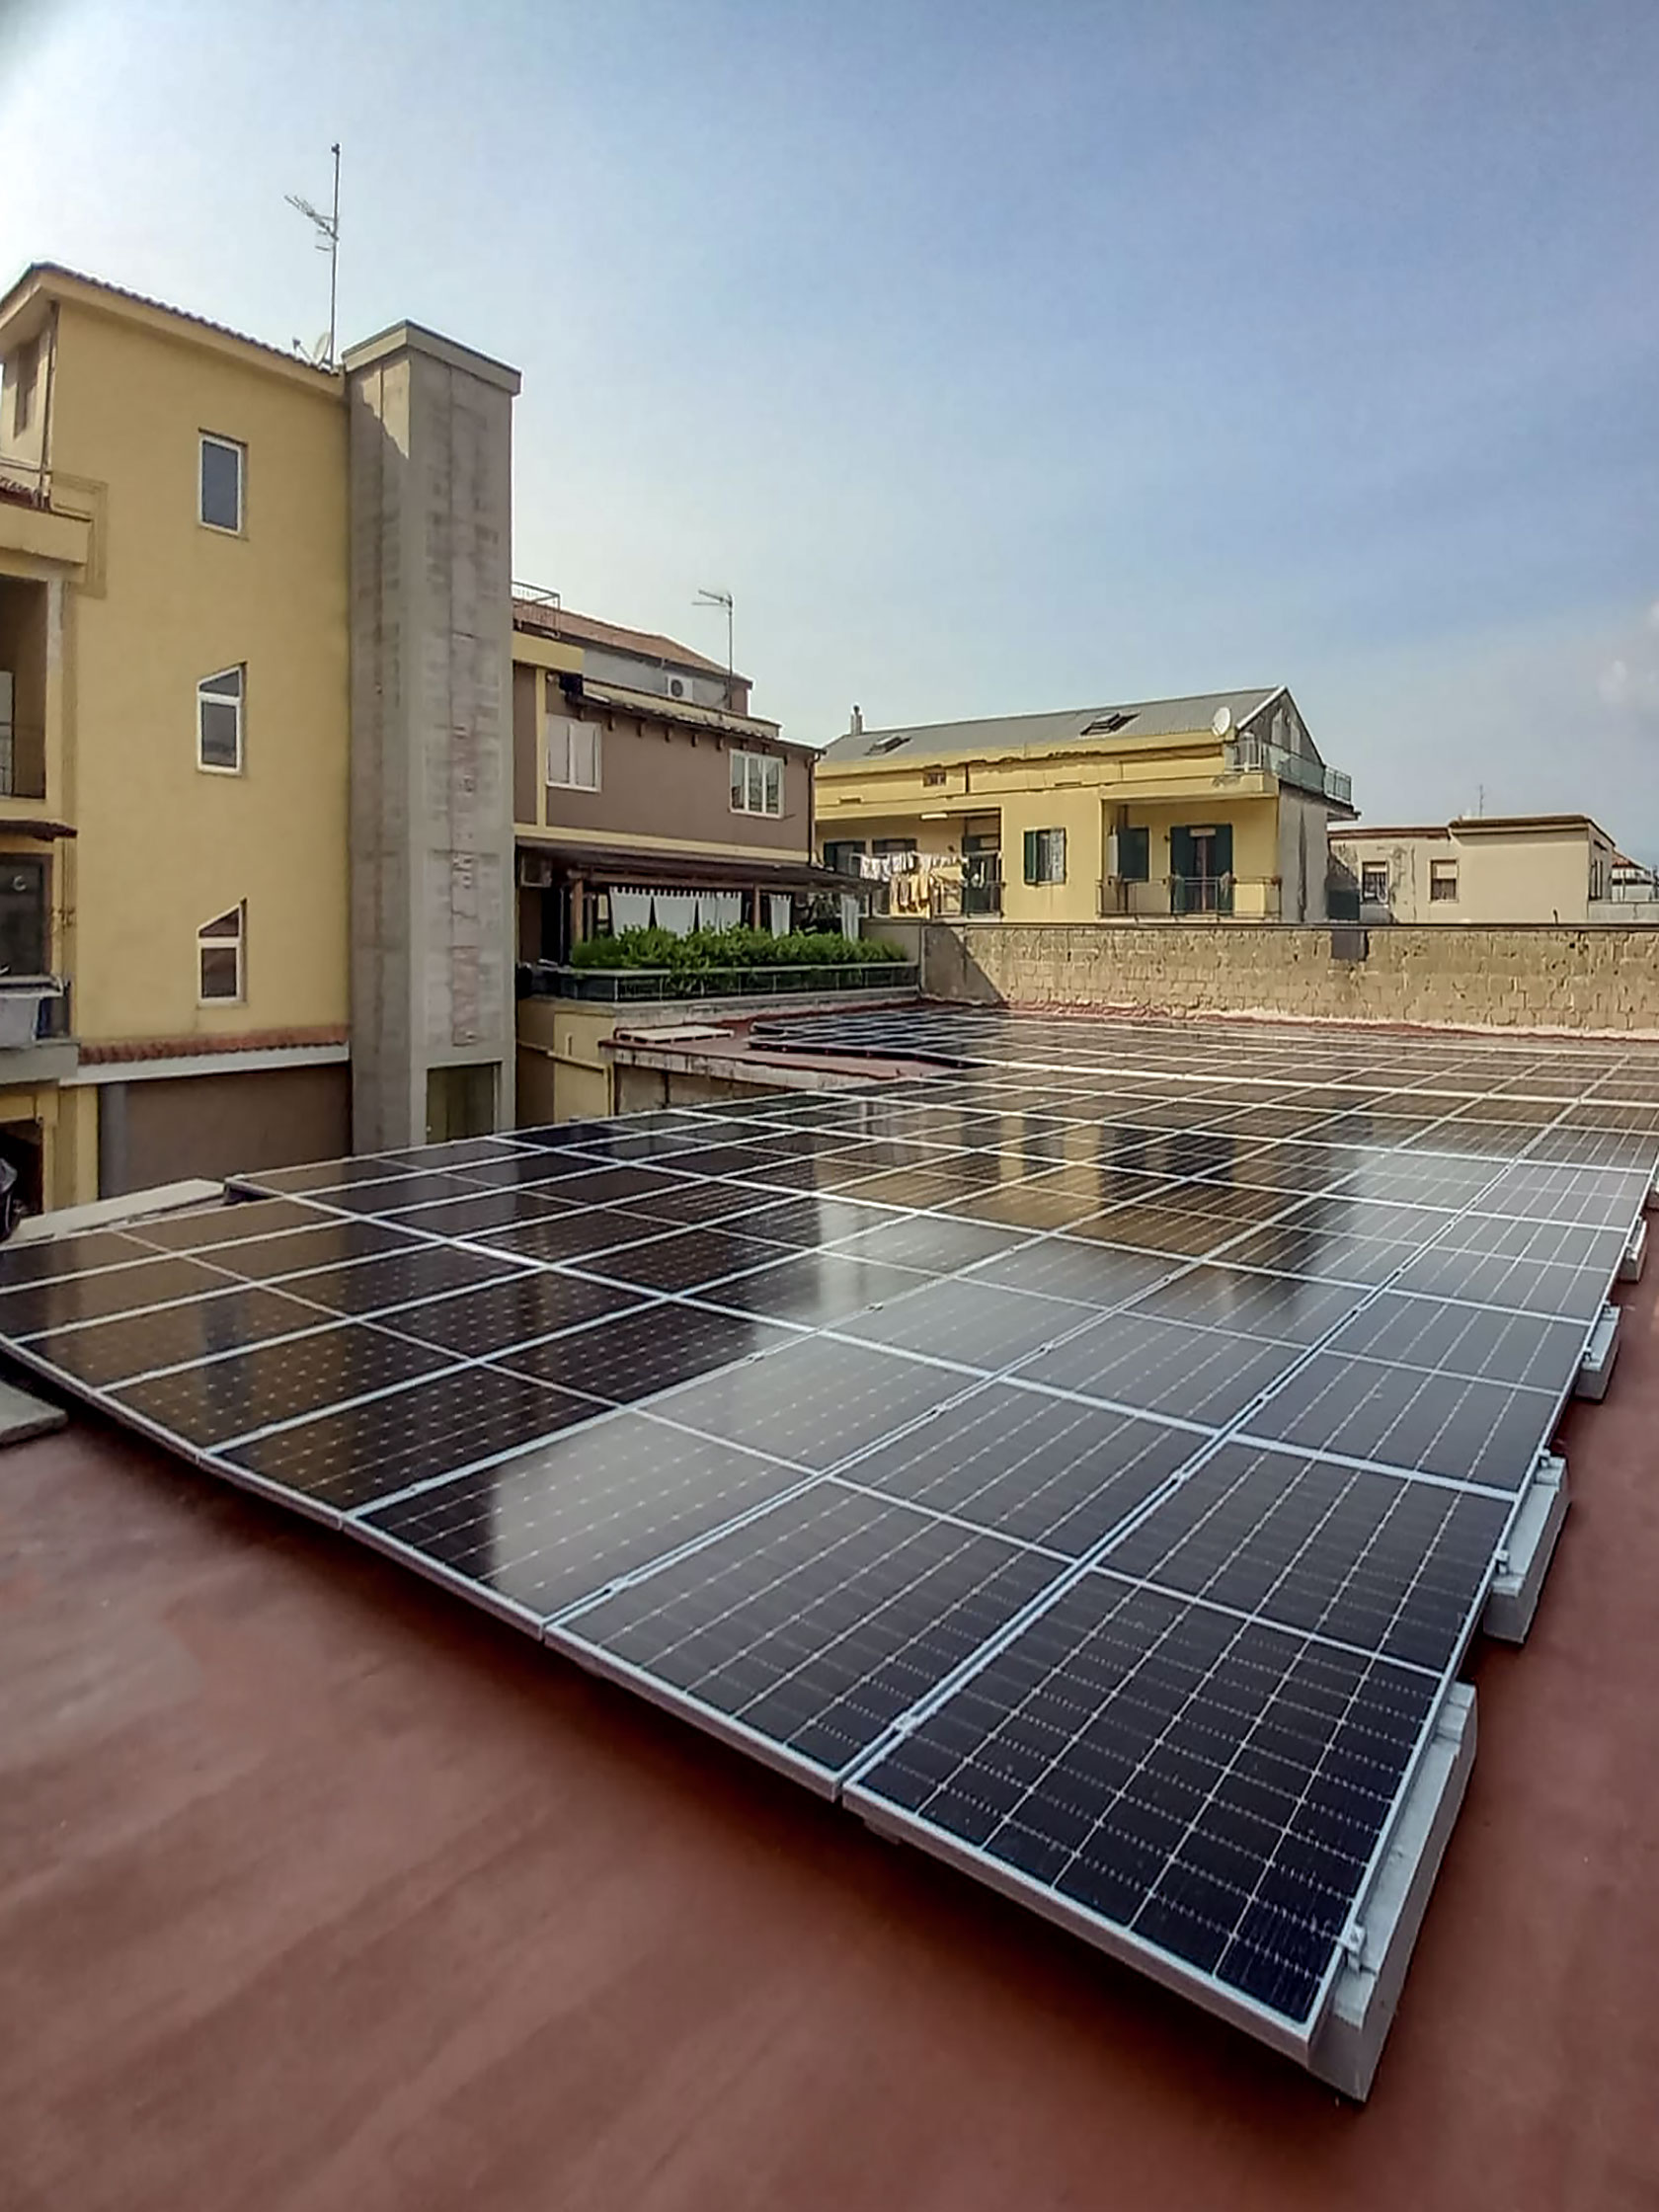 Impianto Fotovoltaico 60 kWp Pagani, (Salerno) DMT Solar installatore certificato Tesla Powerwall e Sunpower Maxeon impianti fotovoltaici in tutta Italia residenziale e aziendale business